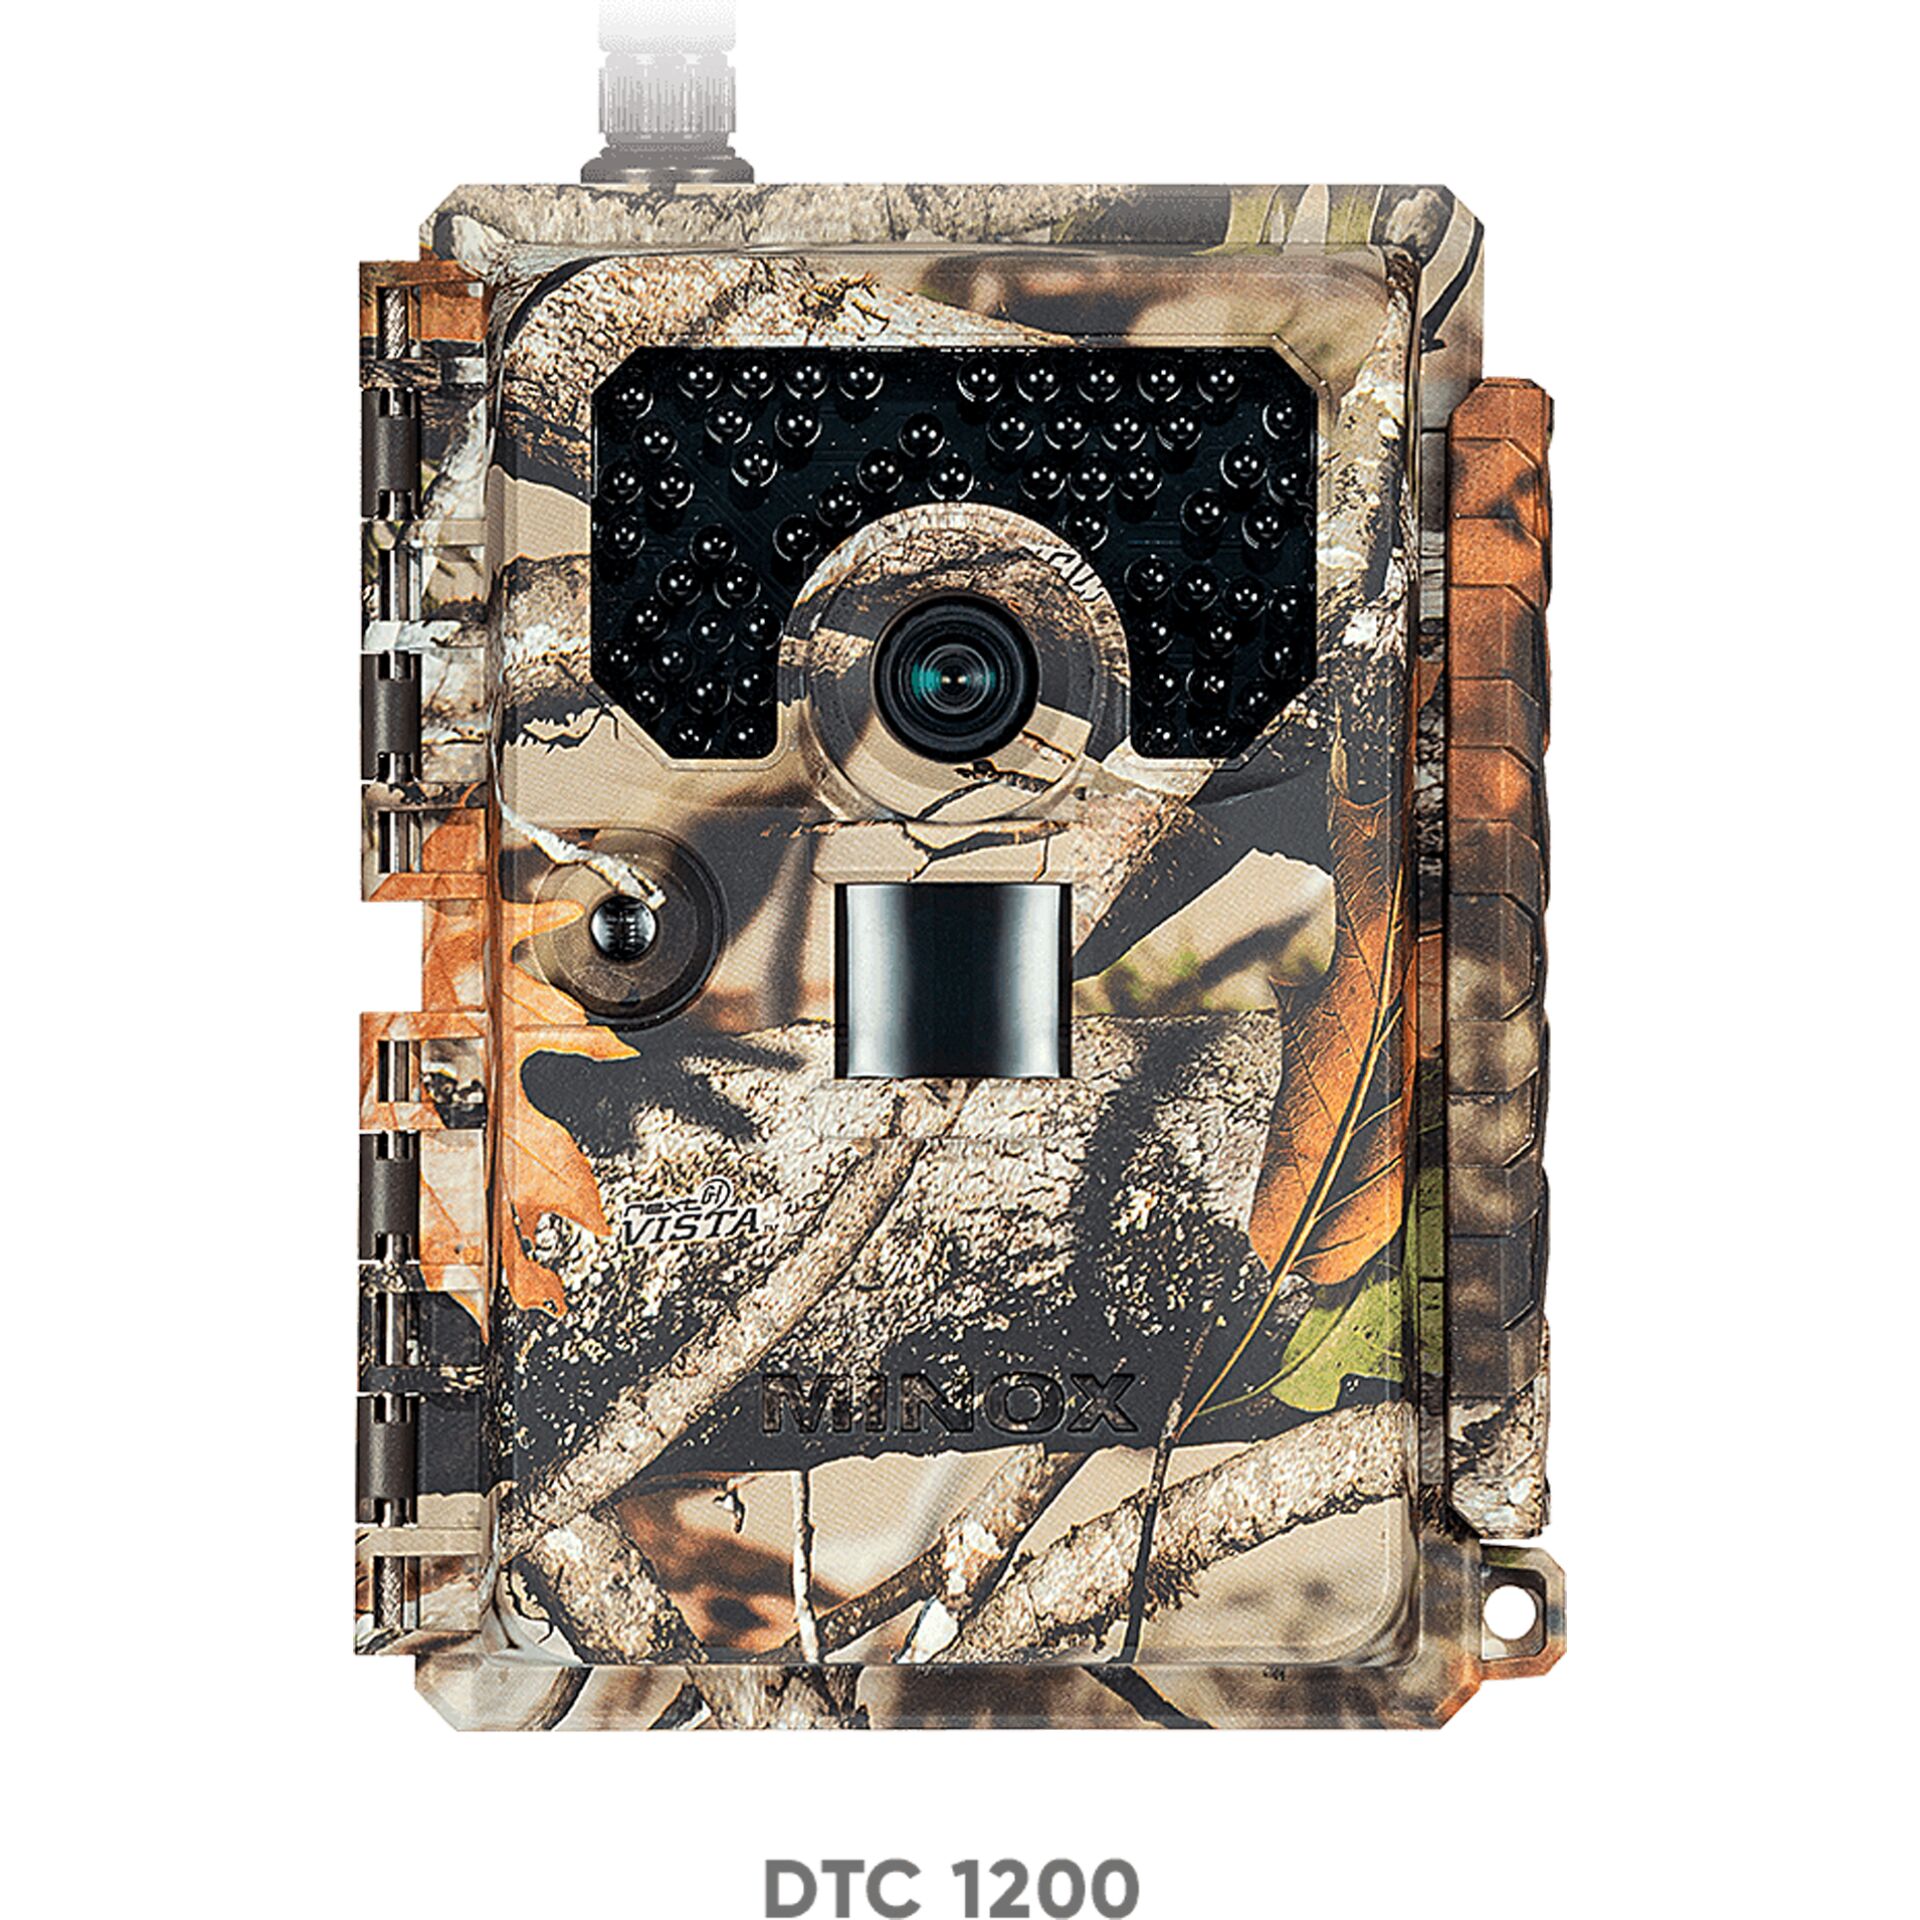 Minox DTC 1200 telecamera da osservazione